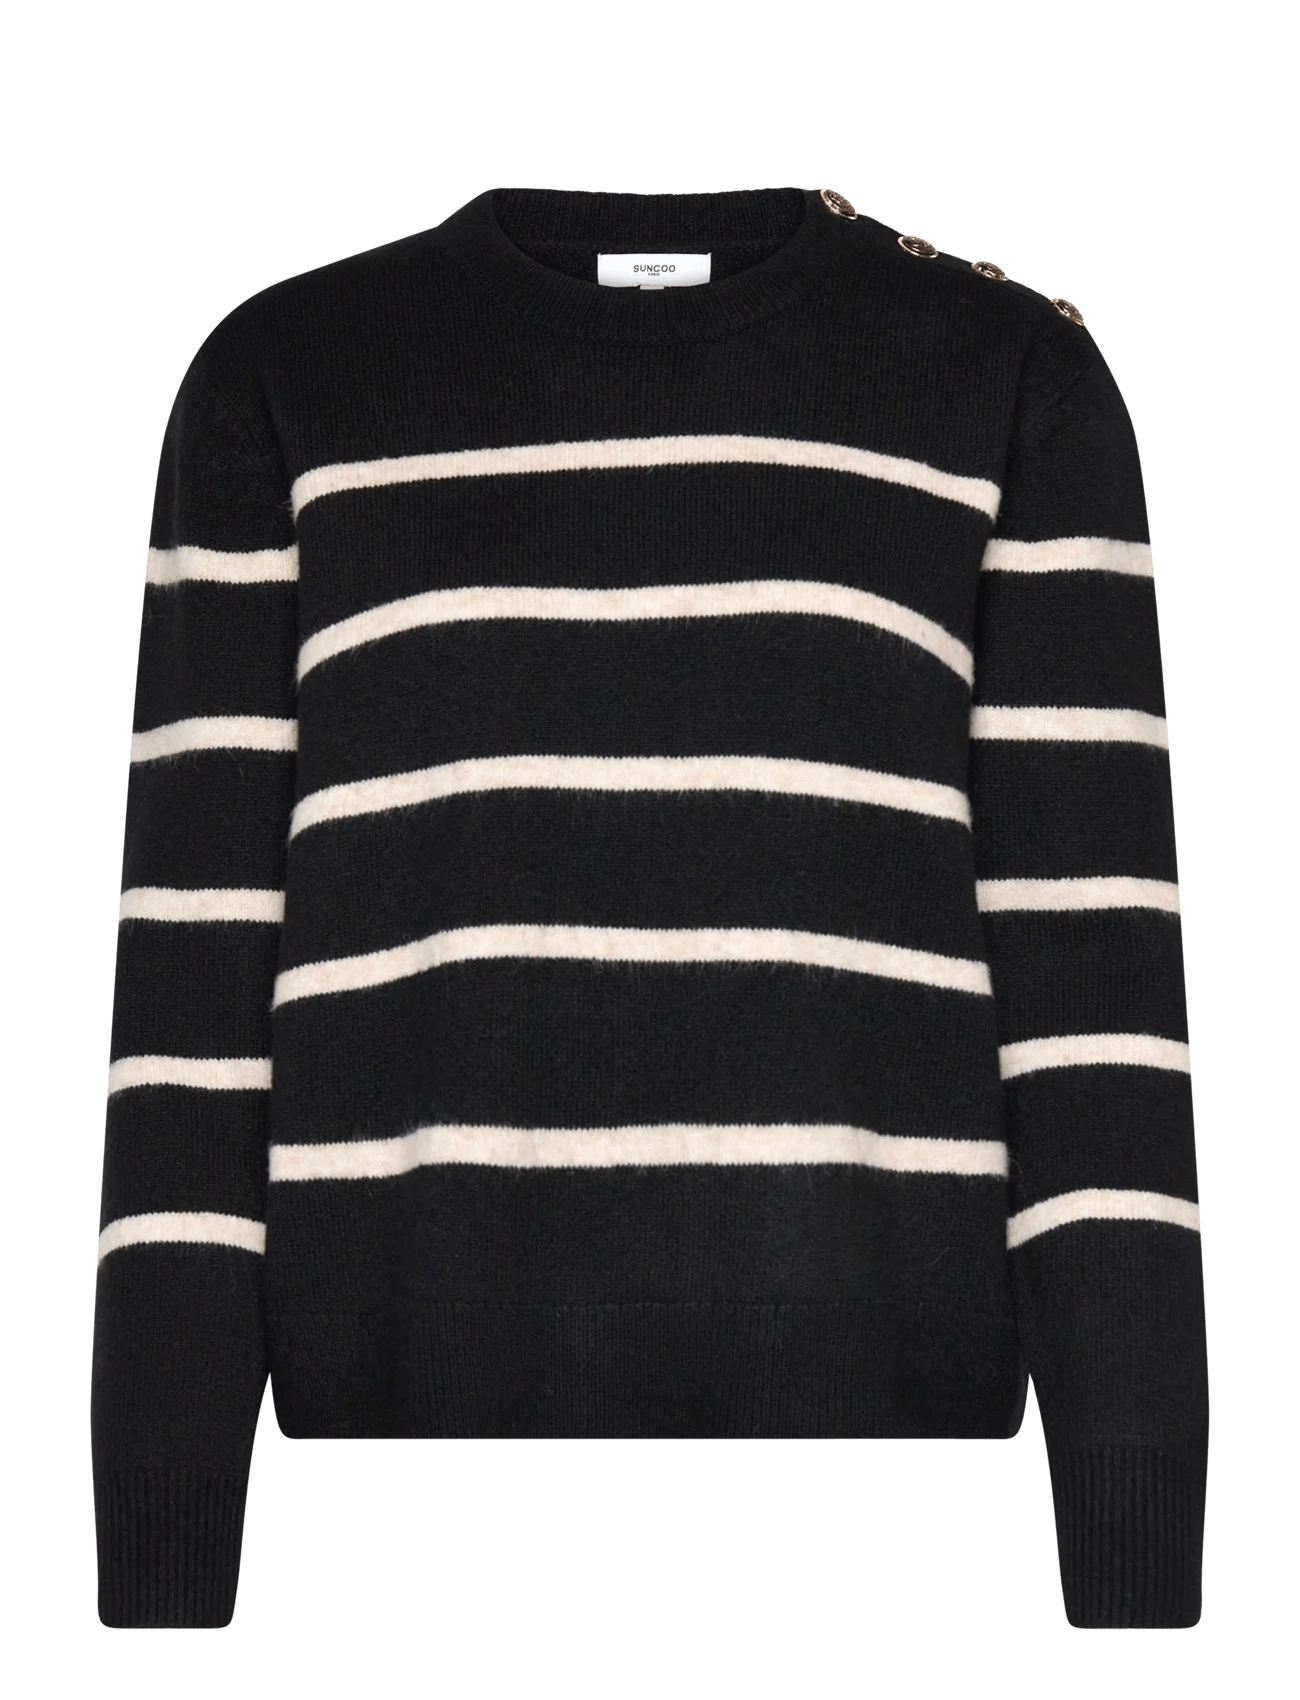 Paul Noir SweaterSweater